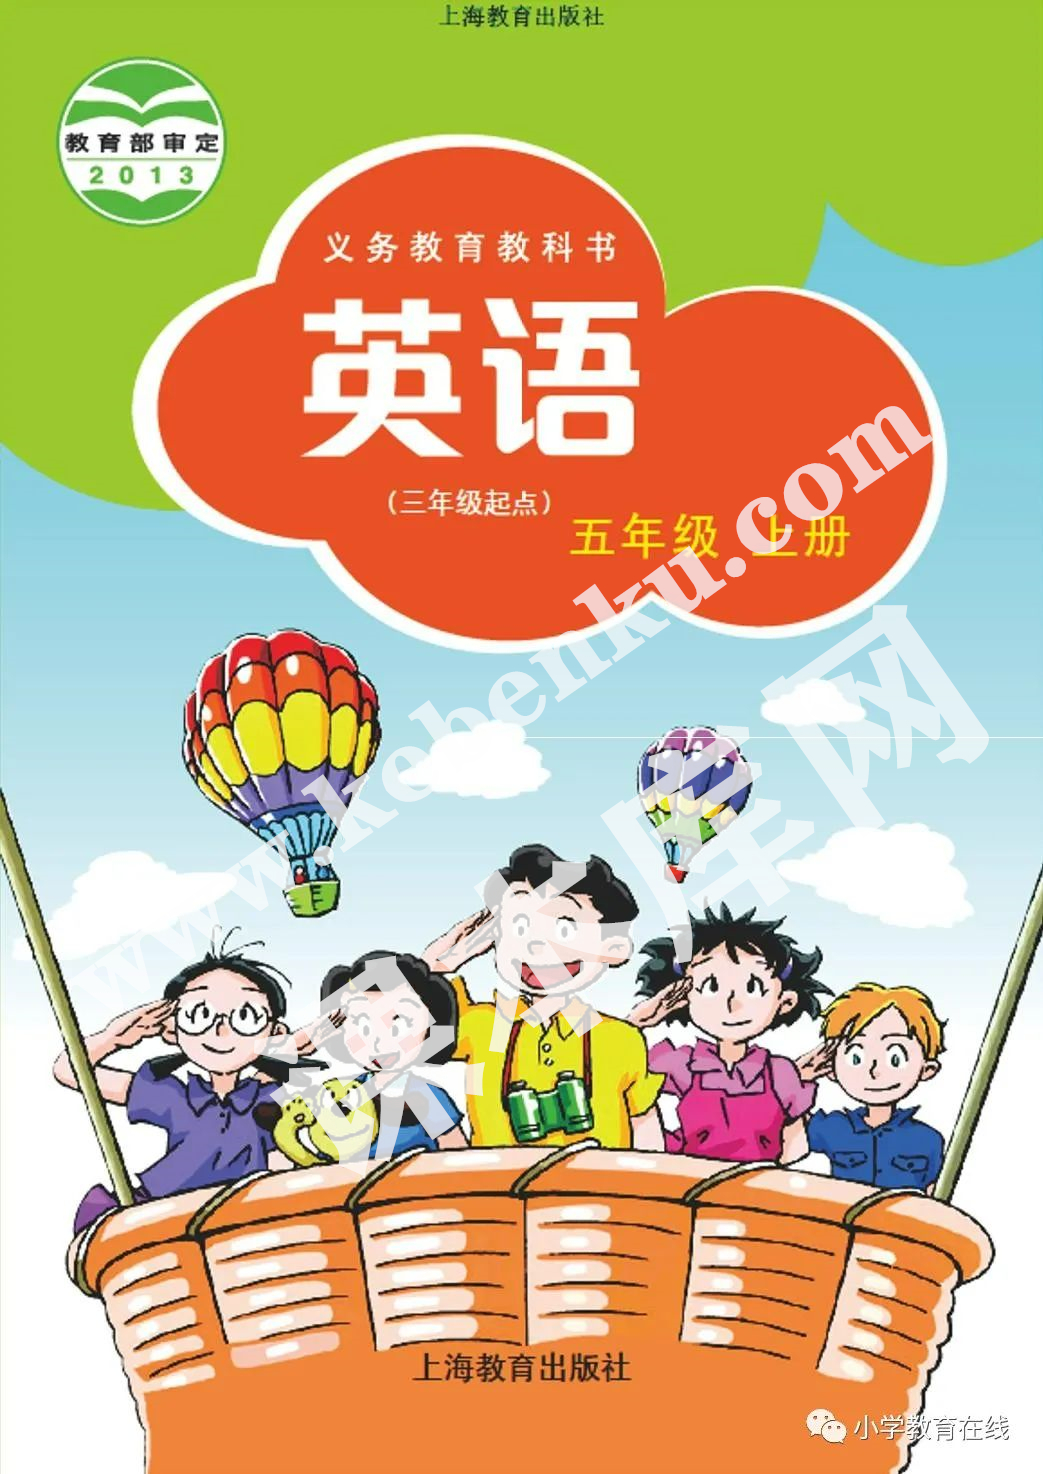 上海教育出版社義務教育課教科書五年級上冊英語電子課本